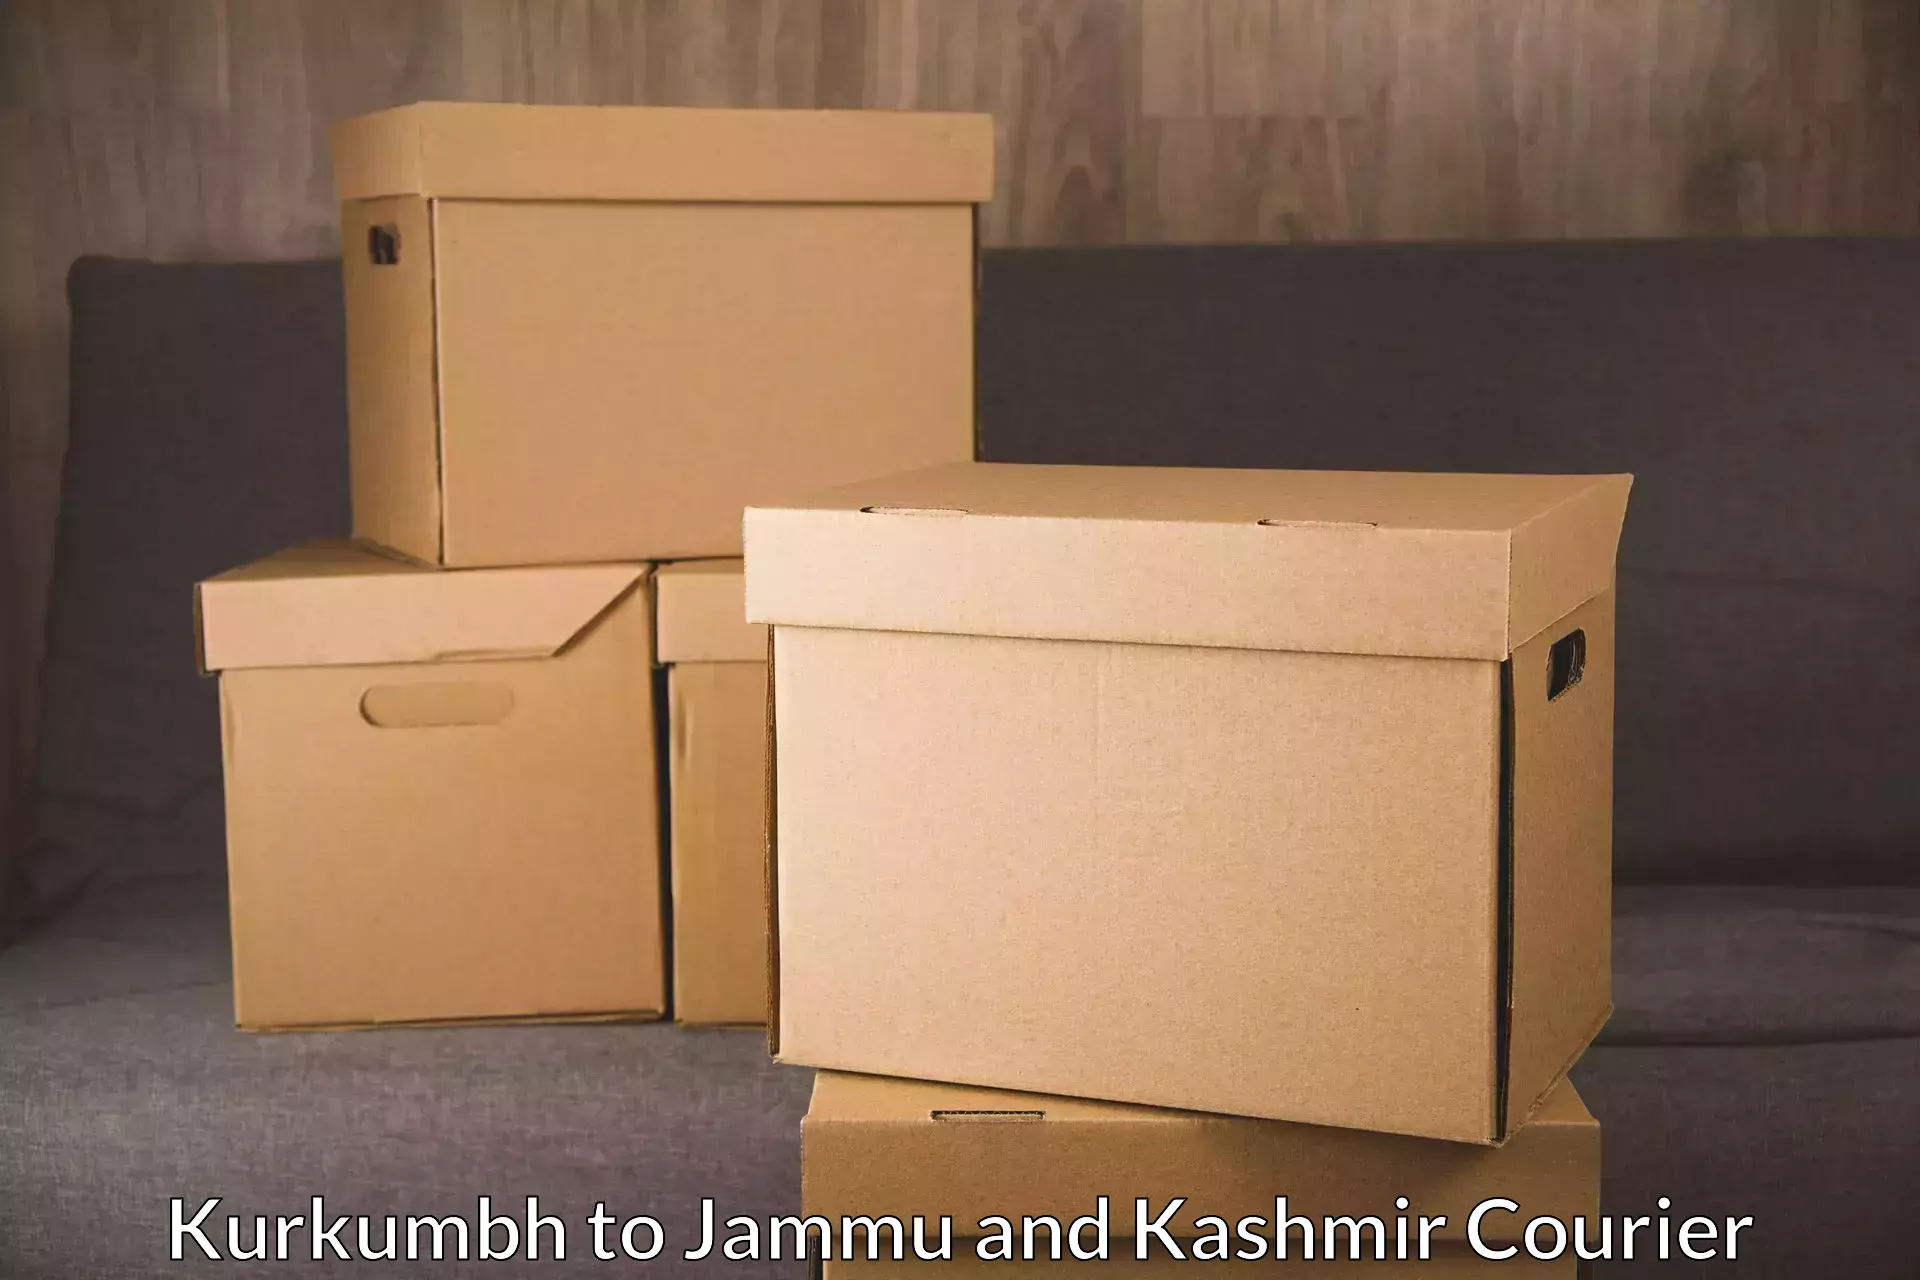 Fast-track shipping solutions in Kurkumbh to IIT Jammu